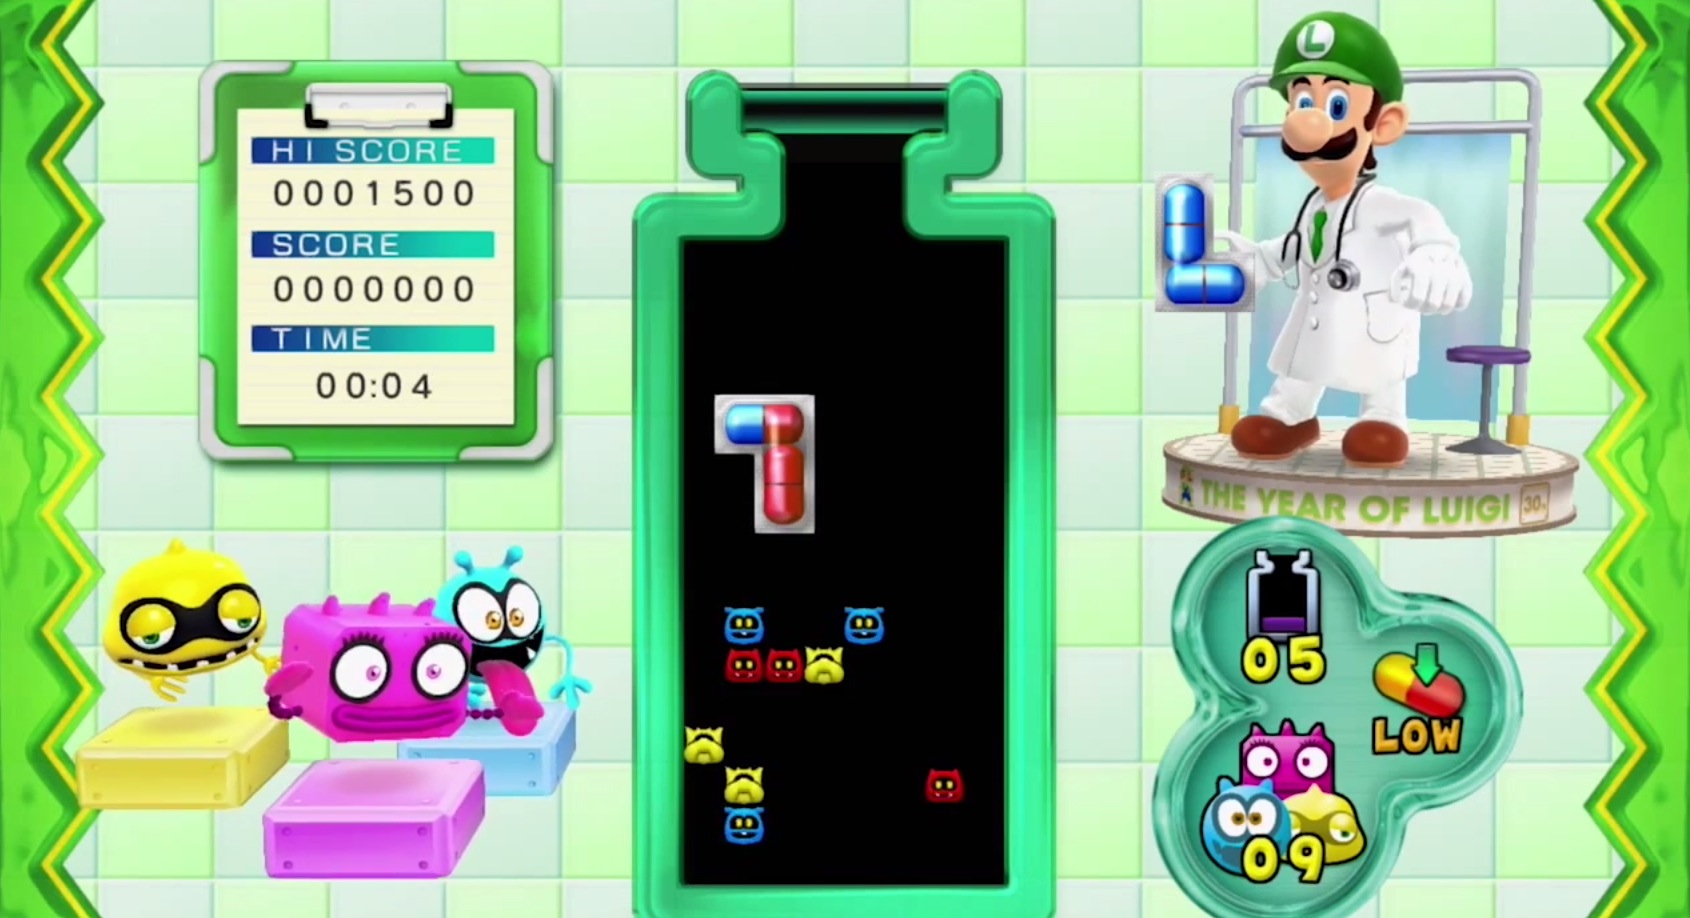 Dr. Luigi Announced for Wii U